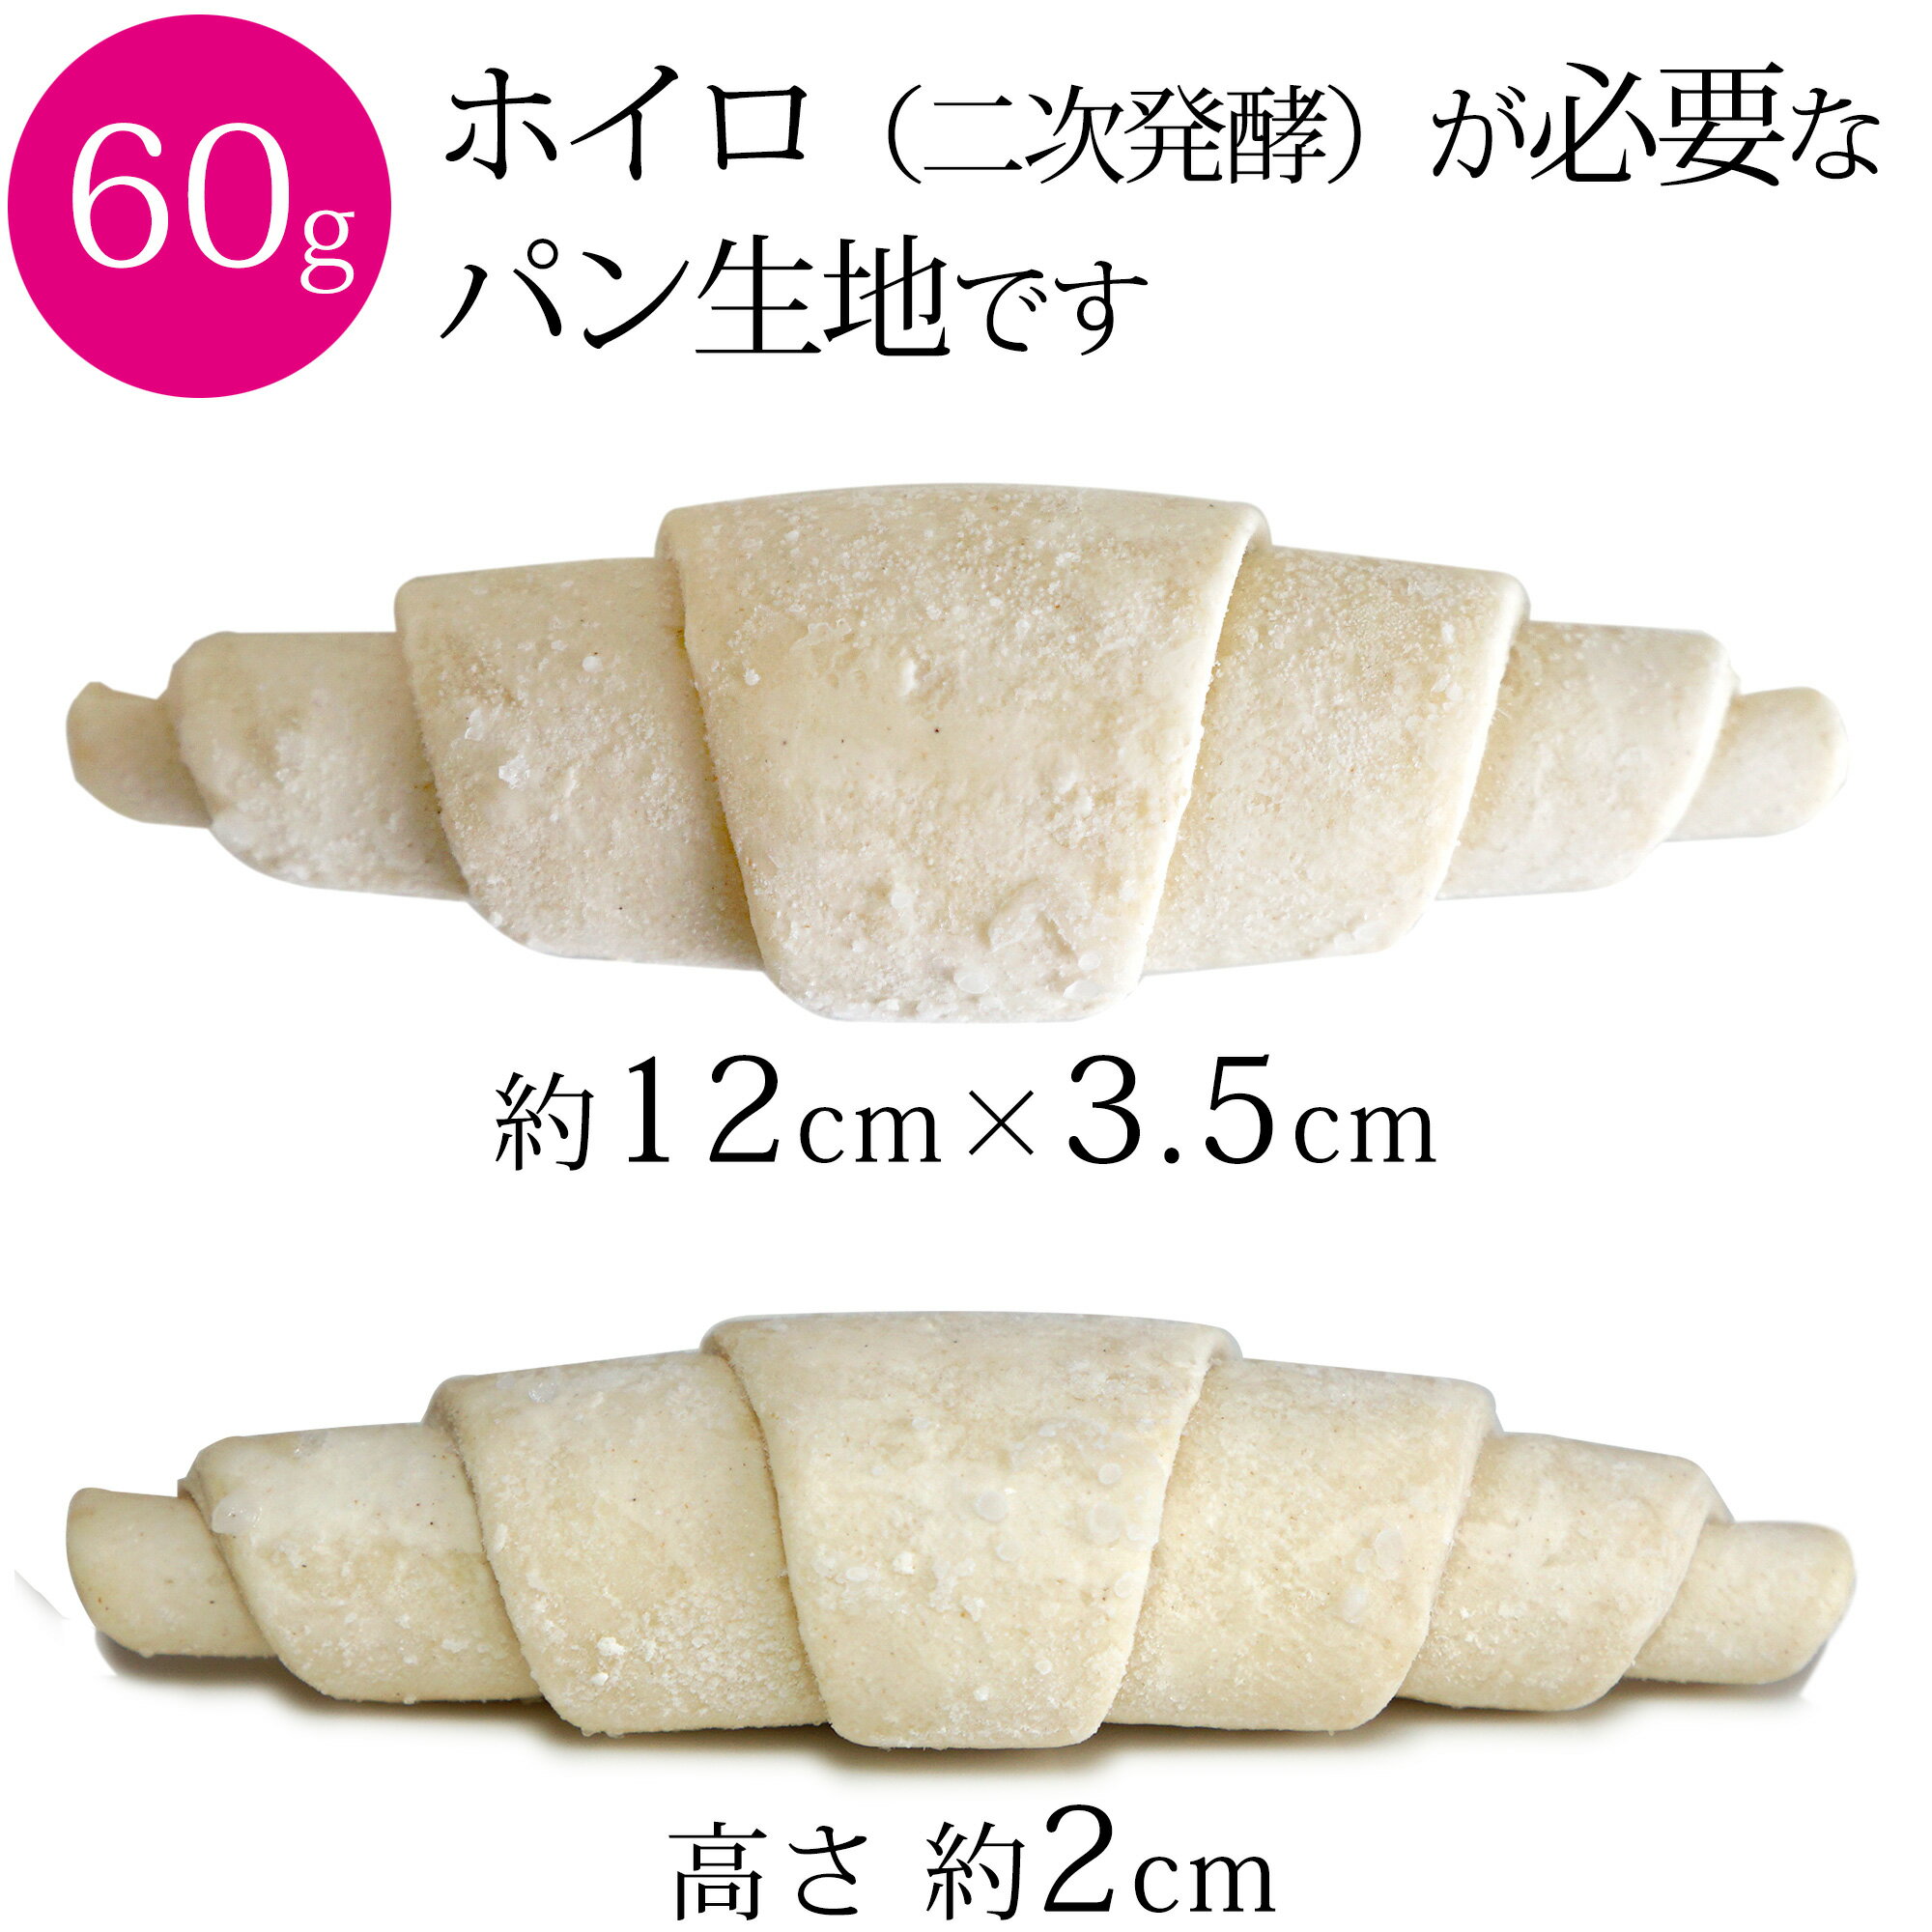 成形冷凍パン AOPバタークロワッサン 60g 約60個×3パック 合計約180個 ホイロ必要 パン生地 クロワッサン フランス産 業務用 箱入り 大容量 冷凍 2